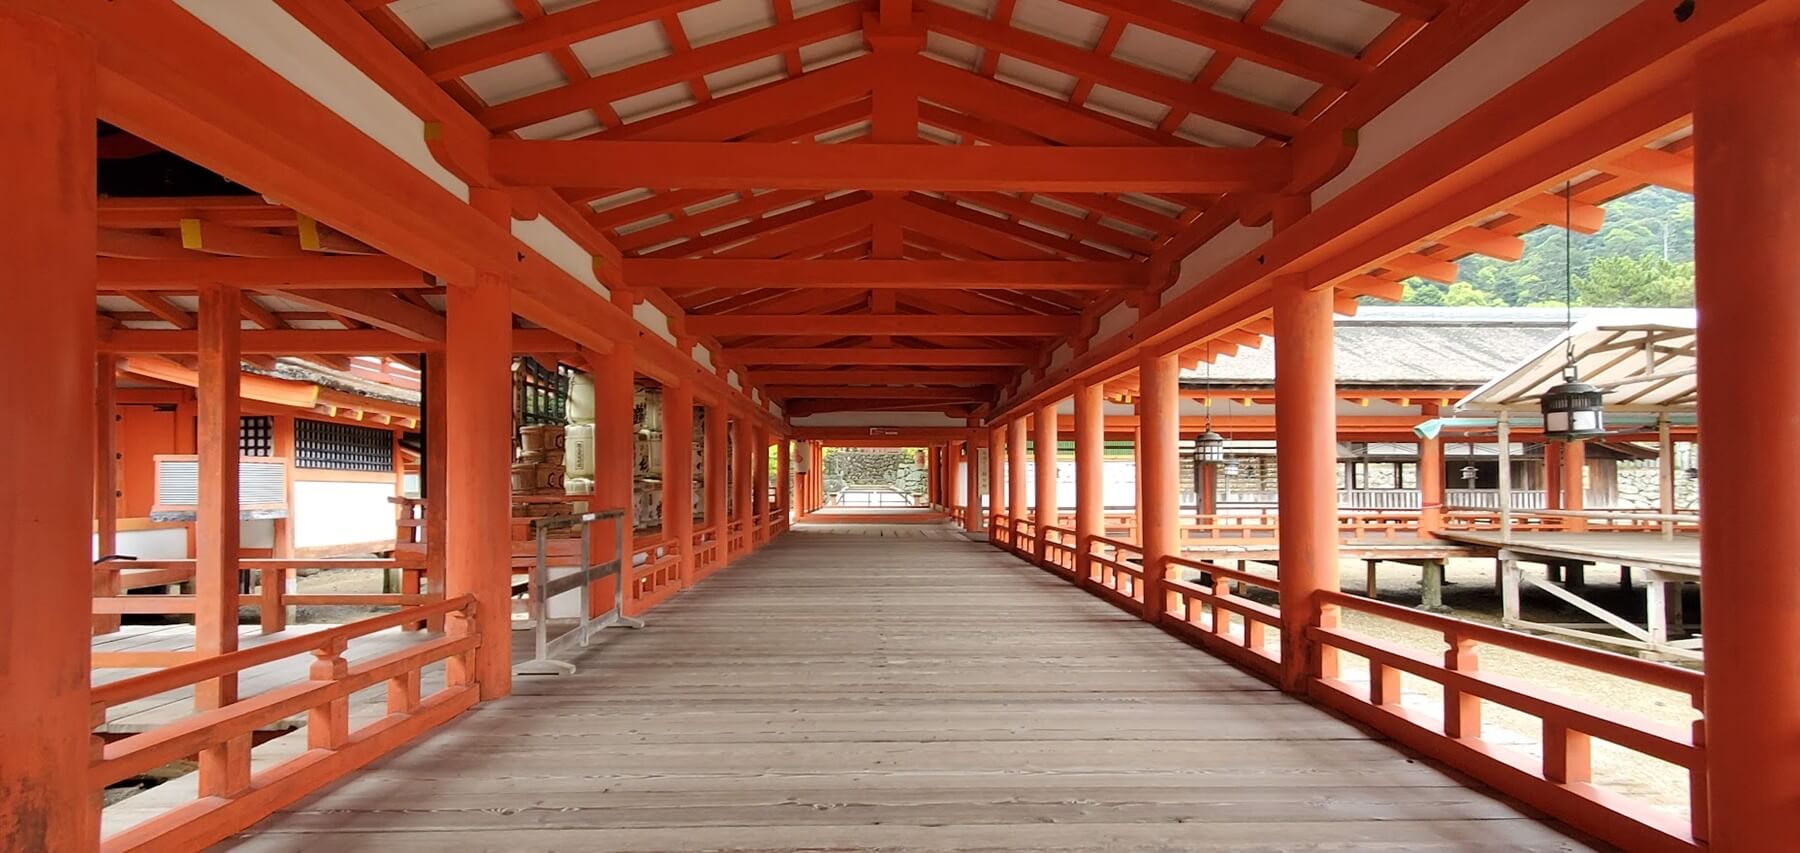 安芸の宮島・厳島神社